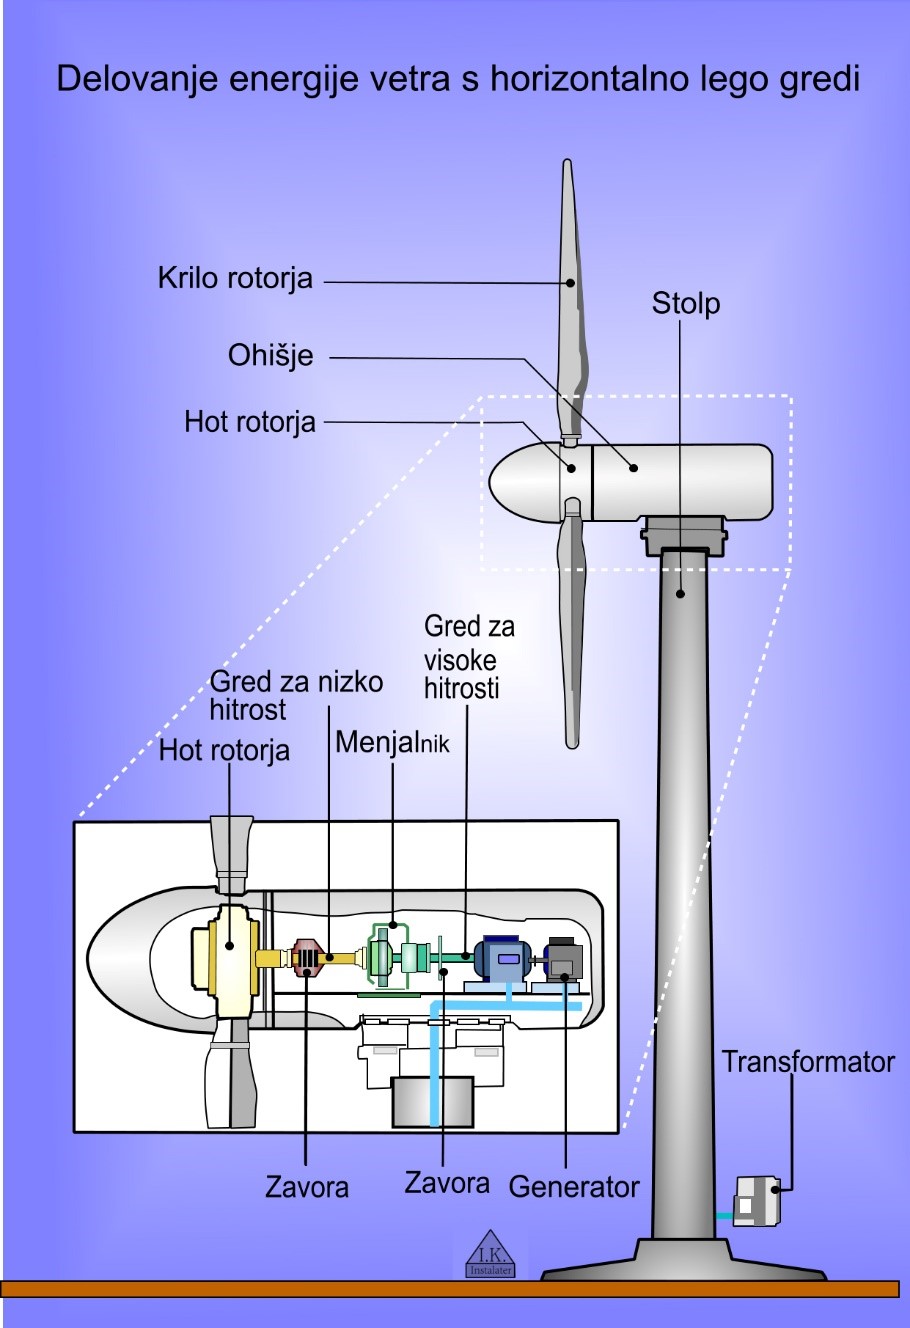 Vetrna turbina s horizontalno lego gredi -1 copy